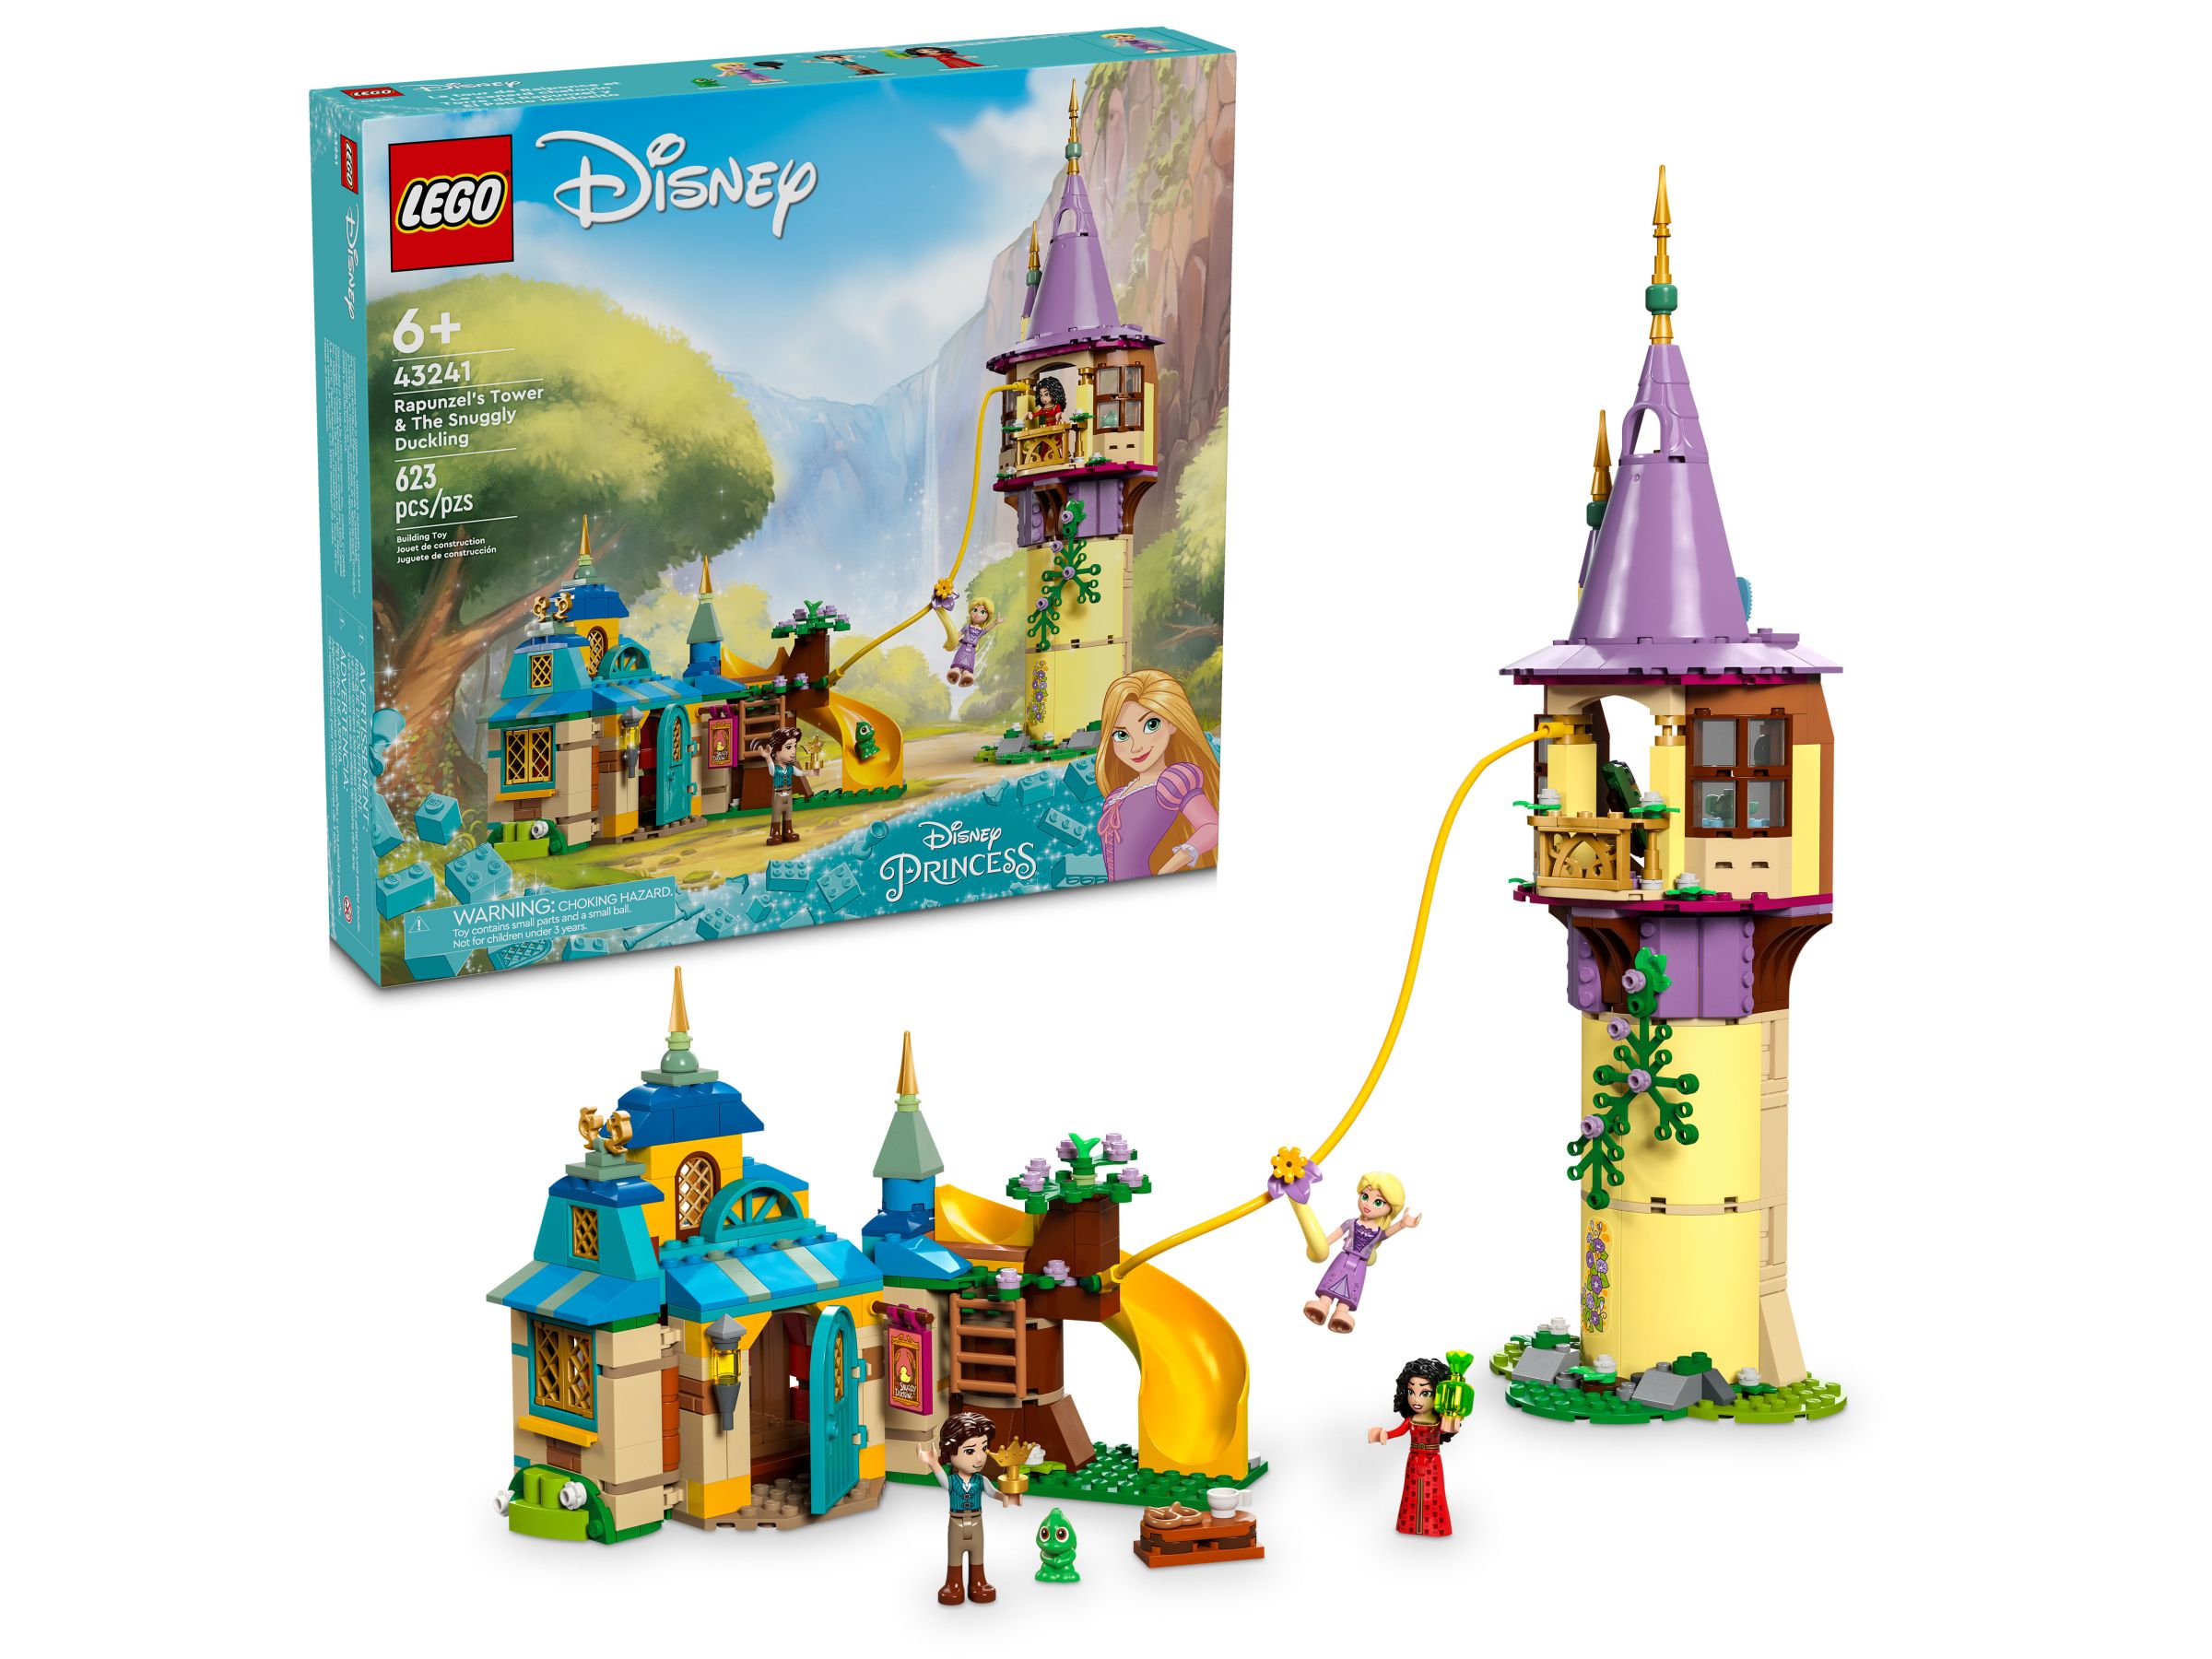 LEGO Disney 43241 Rapunzels Turm und die Taverne „Zum Quietscheentchen“ LEGO_43241.jpg